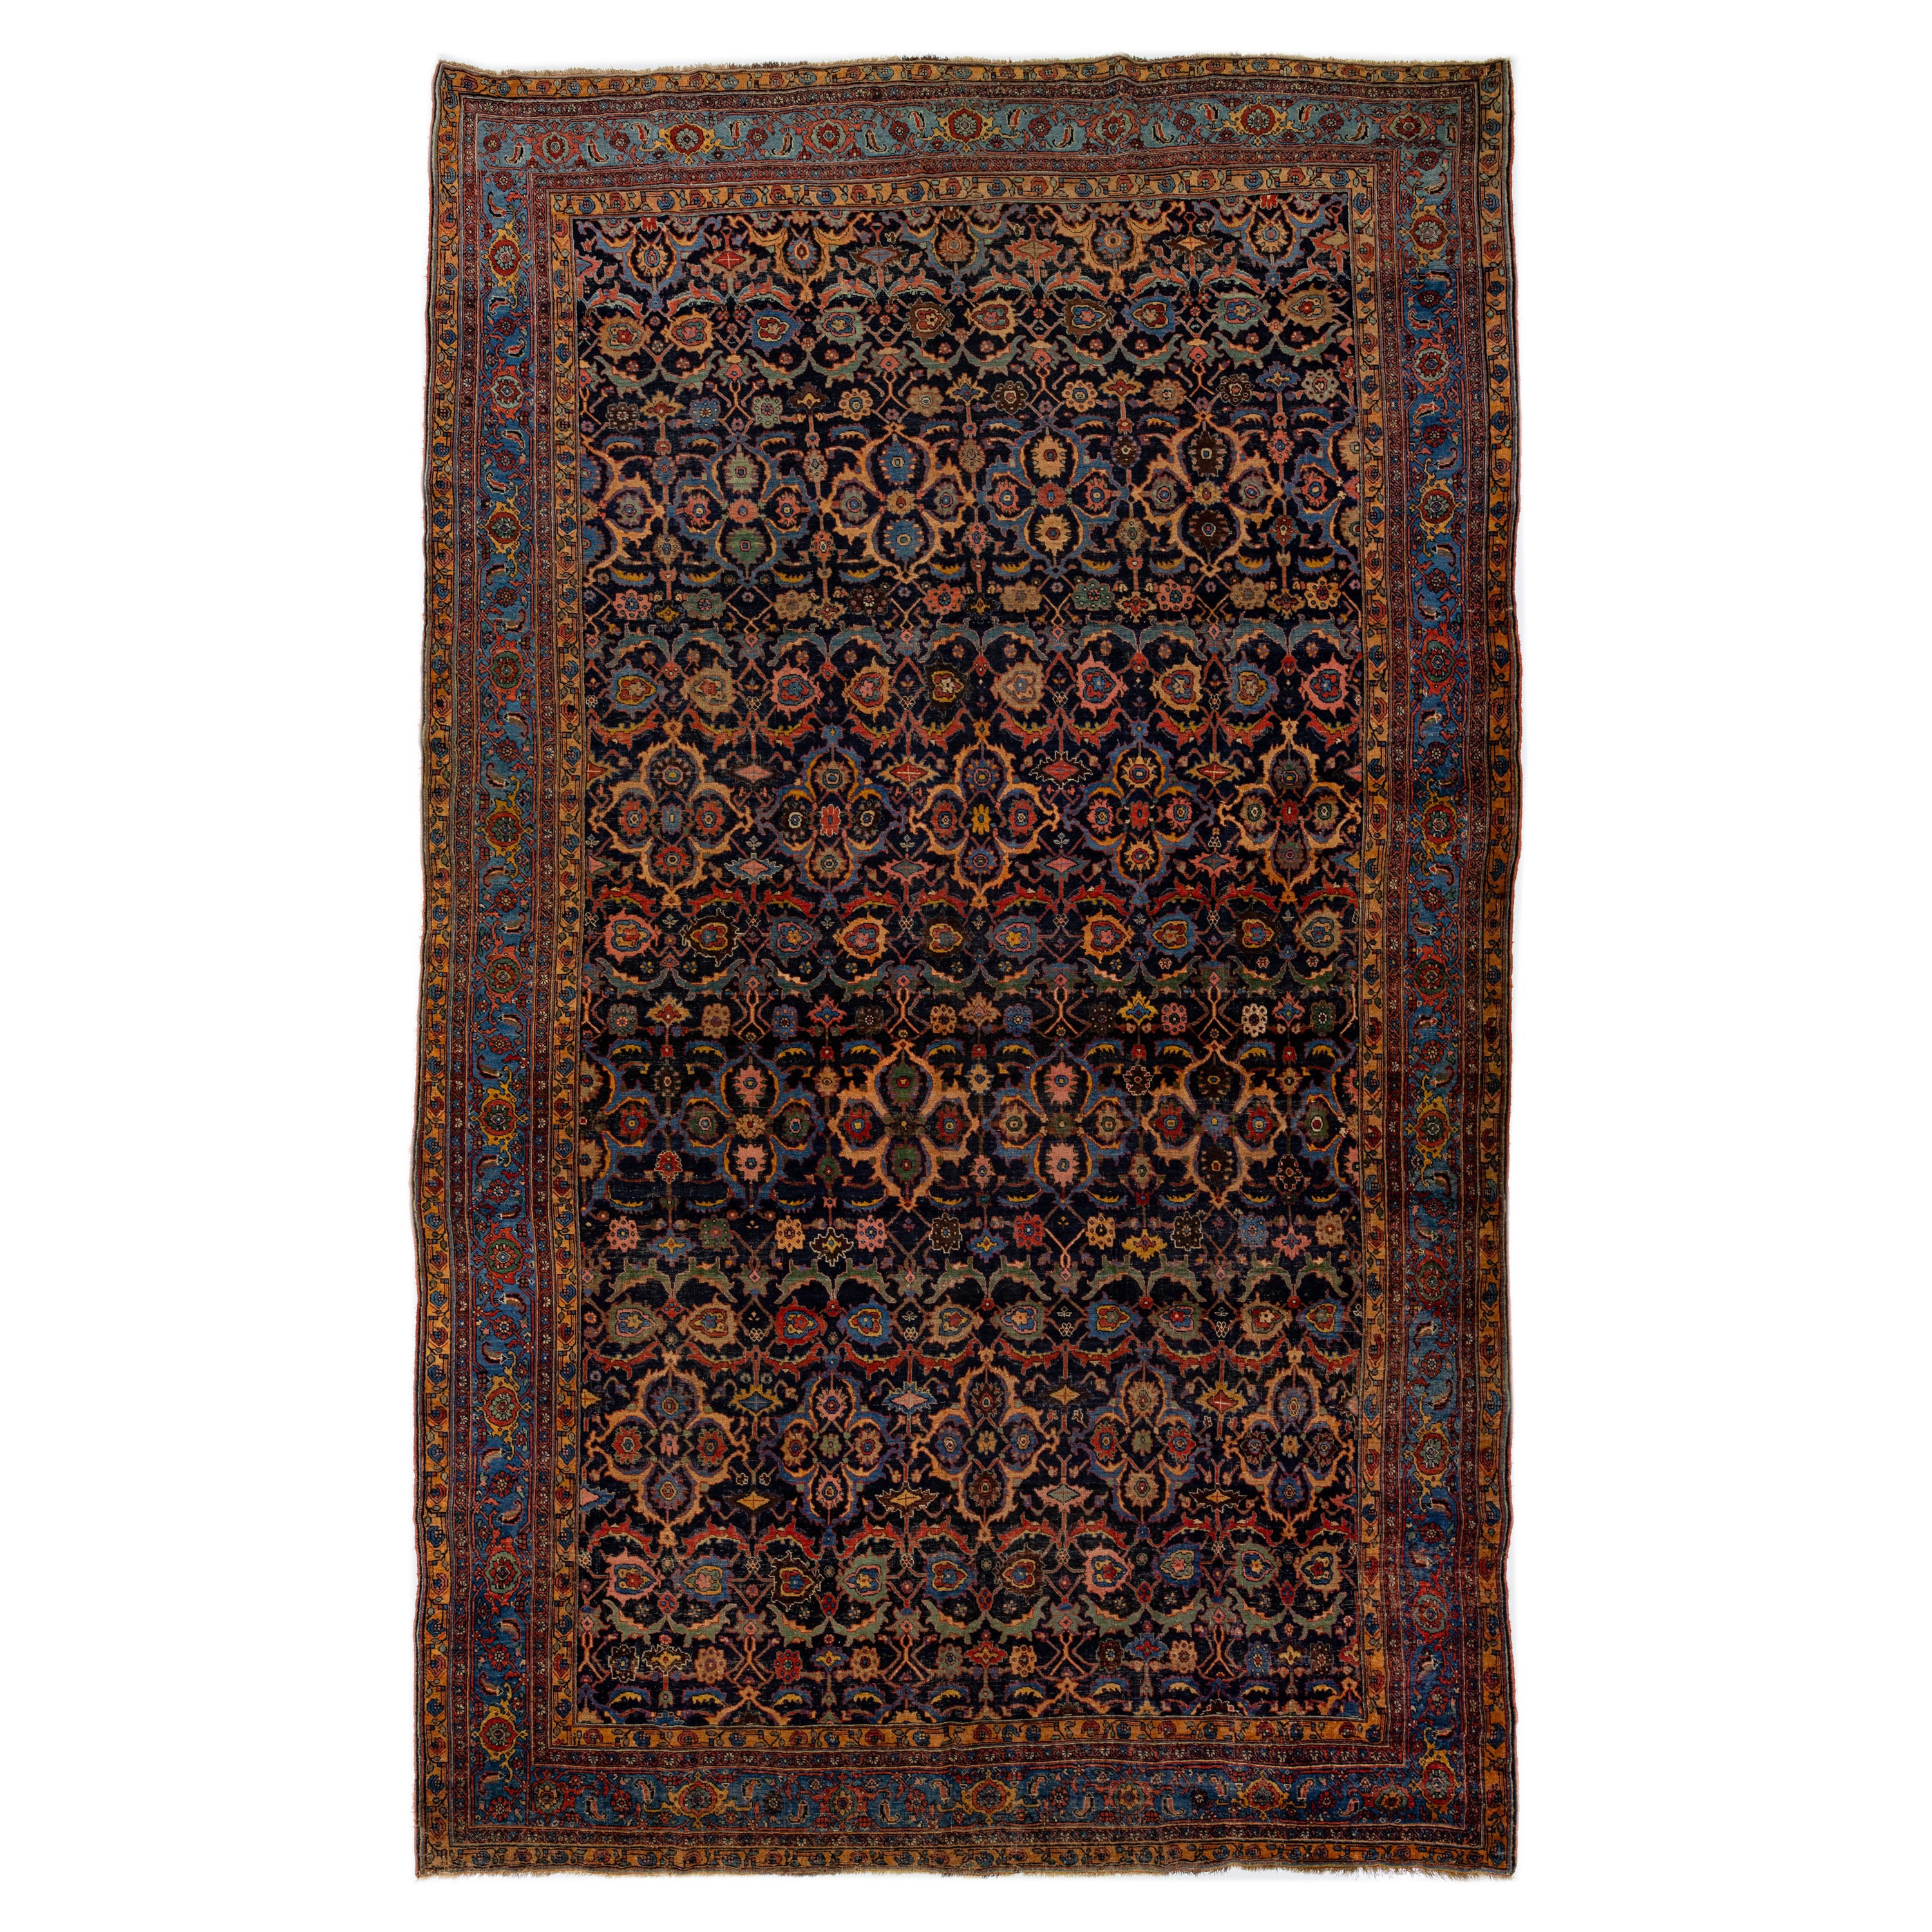  Oversize Antique Bidjar Handmade Wool Rug in Dark Blue with Allover Design